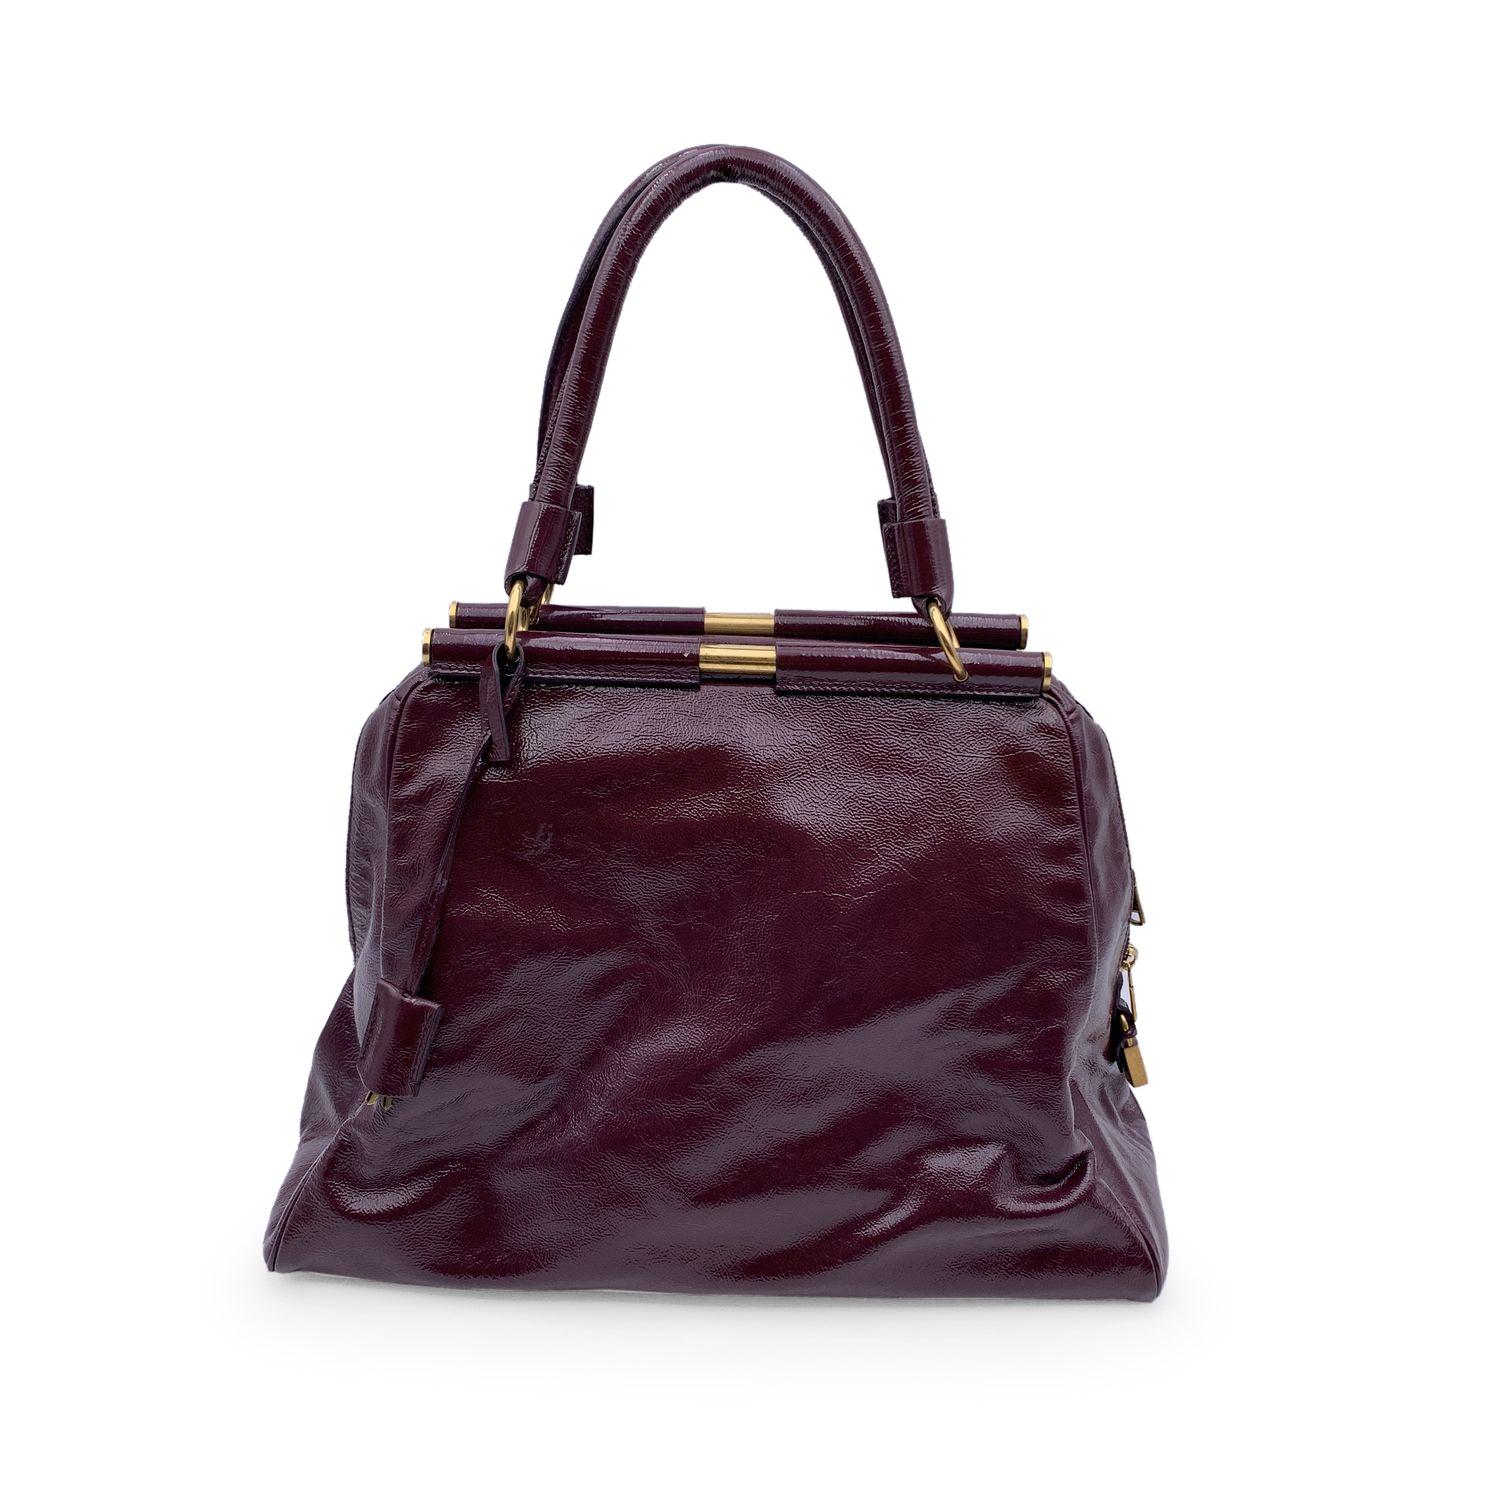 Yves Saint Laurent Purple Patent Majorelle Bag Handbag Satchel In Excellent Condition For Sale In Rome, Rome